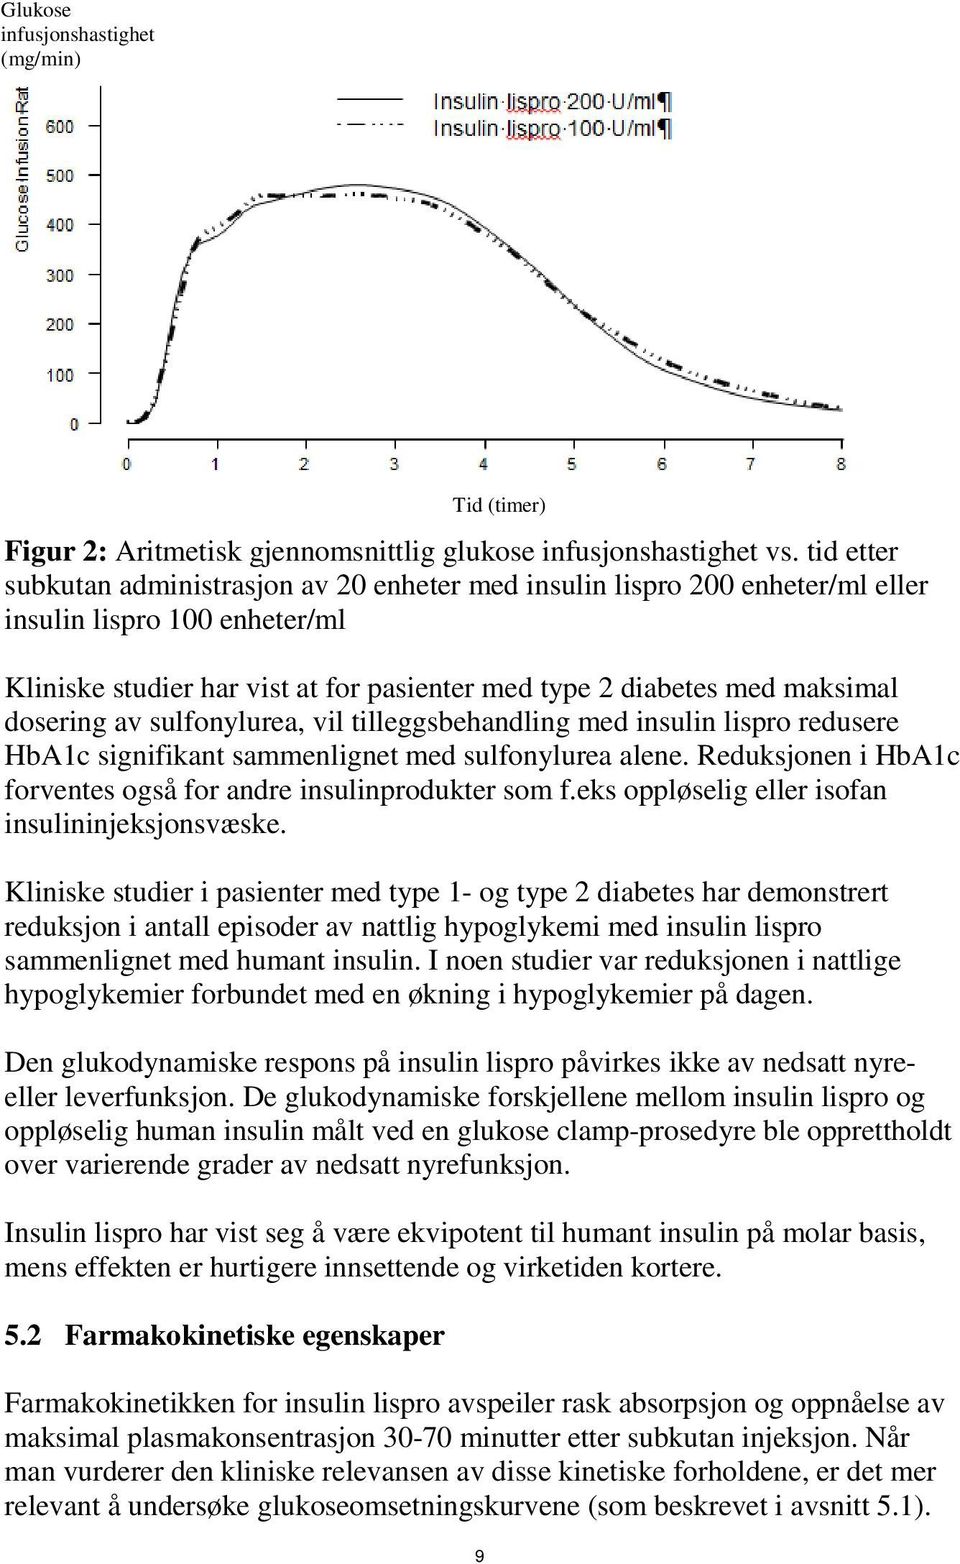 dosering av sulfonylurea, vil tilleggsbehandling med insulin lispro redusere HbA1c signifikant sammenlignet med sulfonylurea alene. Reduksjonen i HbA1c forventes også for andre insulinprodukter som f.